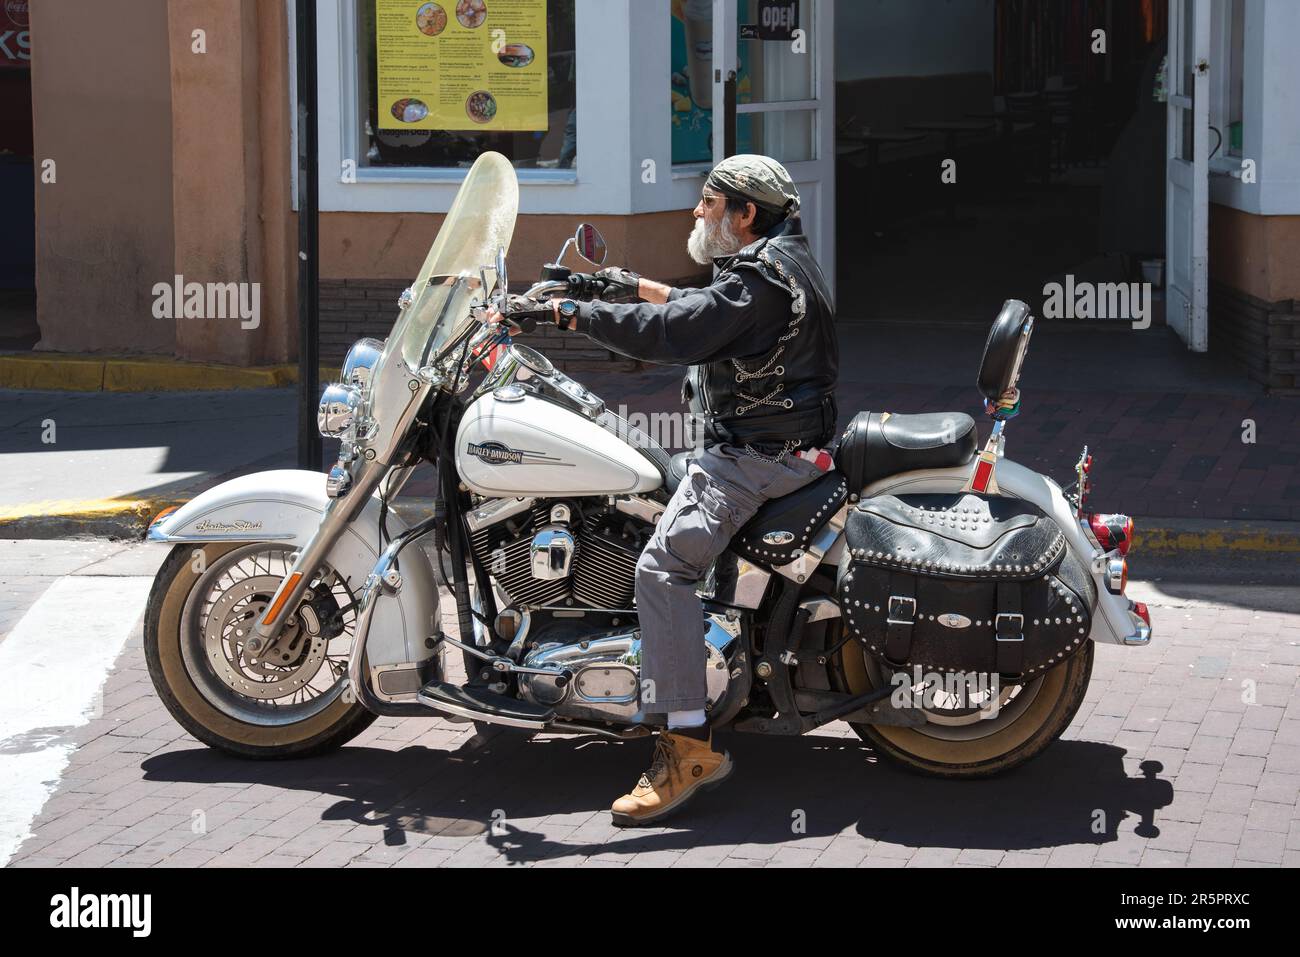 Älterer Mann mit weißem Bart auf einem Harley Davidson Motorrad, hielt an einem Straßenübergang am Santa Fe Plaza, Santa Fe, New Mexico, USA. Stockfoto